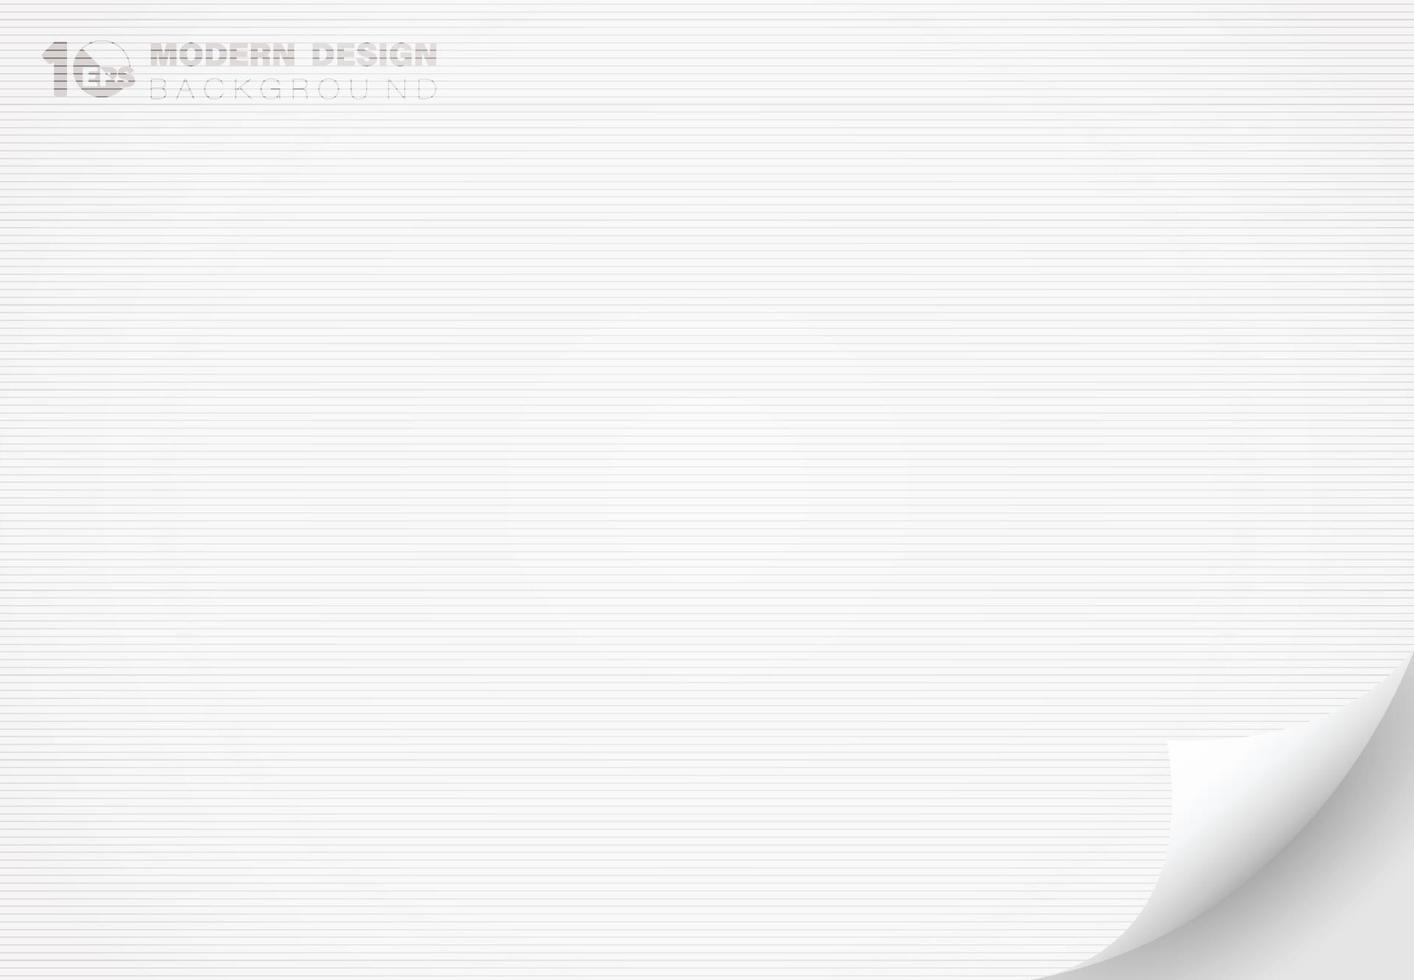 abstract wit papier met omdraaien decoratie artwork lijn structuur ontwerp achtergrond. illustratie vector eps10